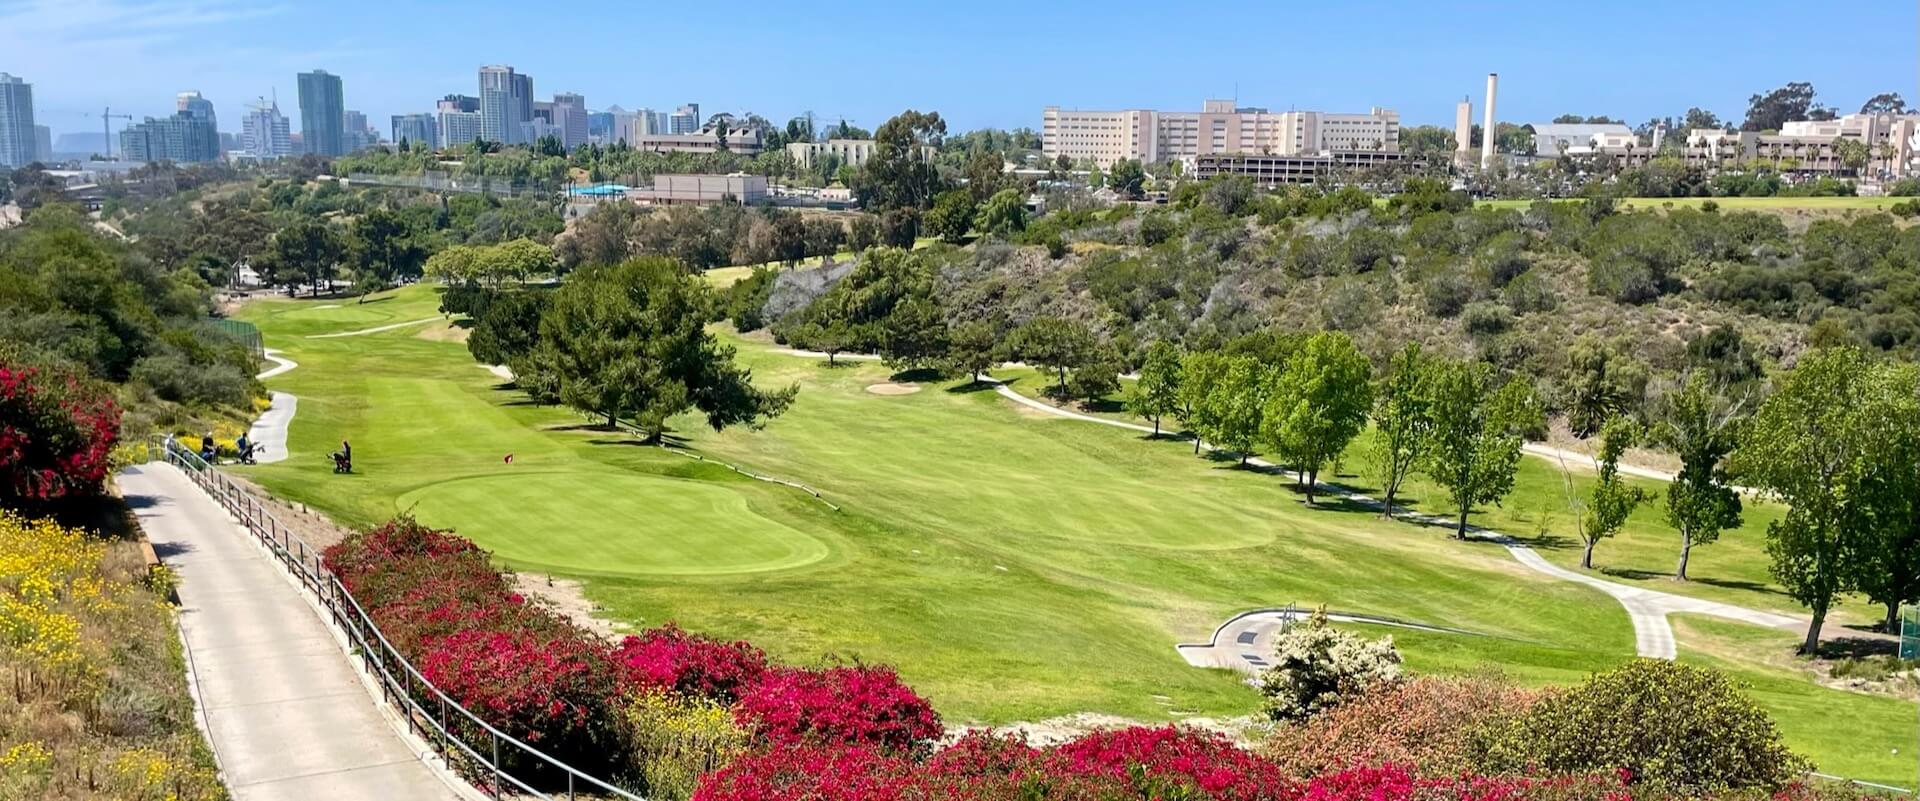 Balboa-Park-Golf-Course-3